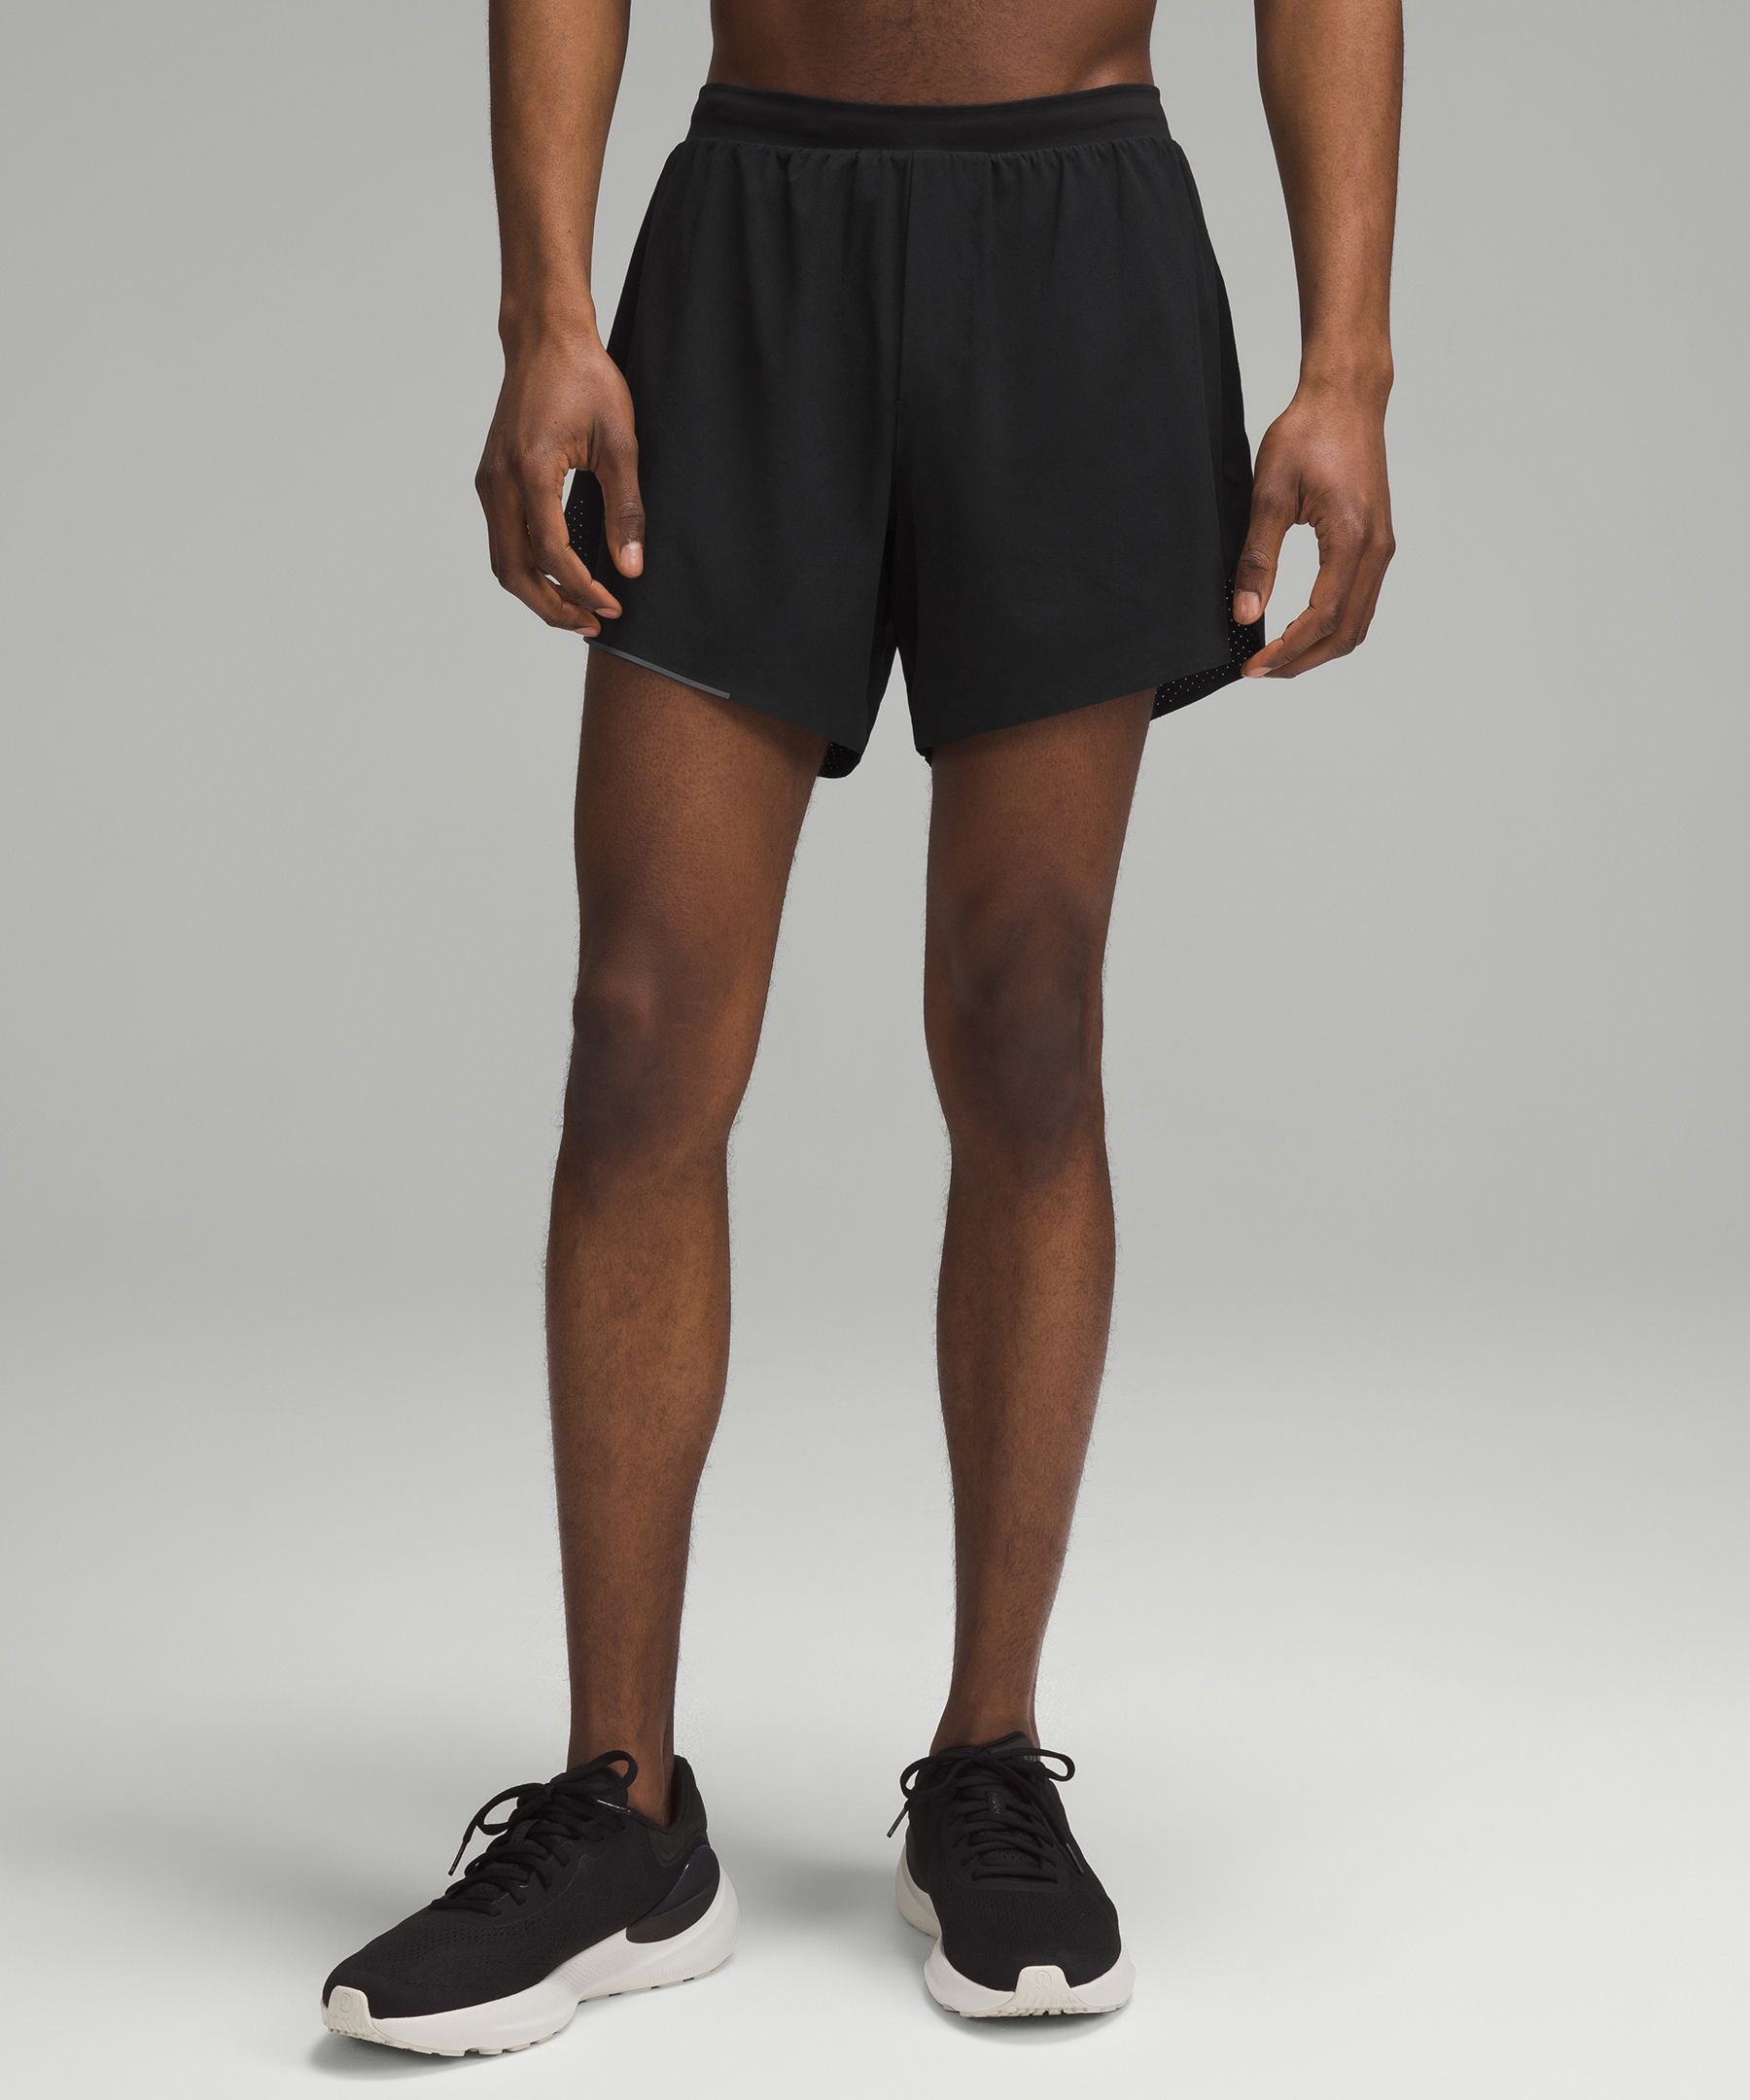 KNOCK OFF lululemon black shorts size XS/S